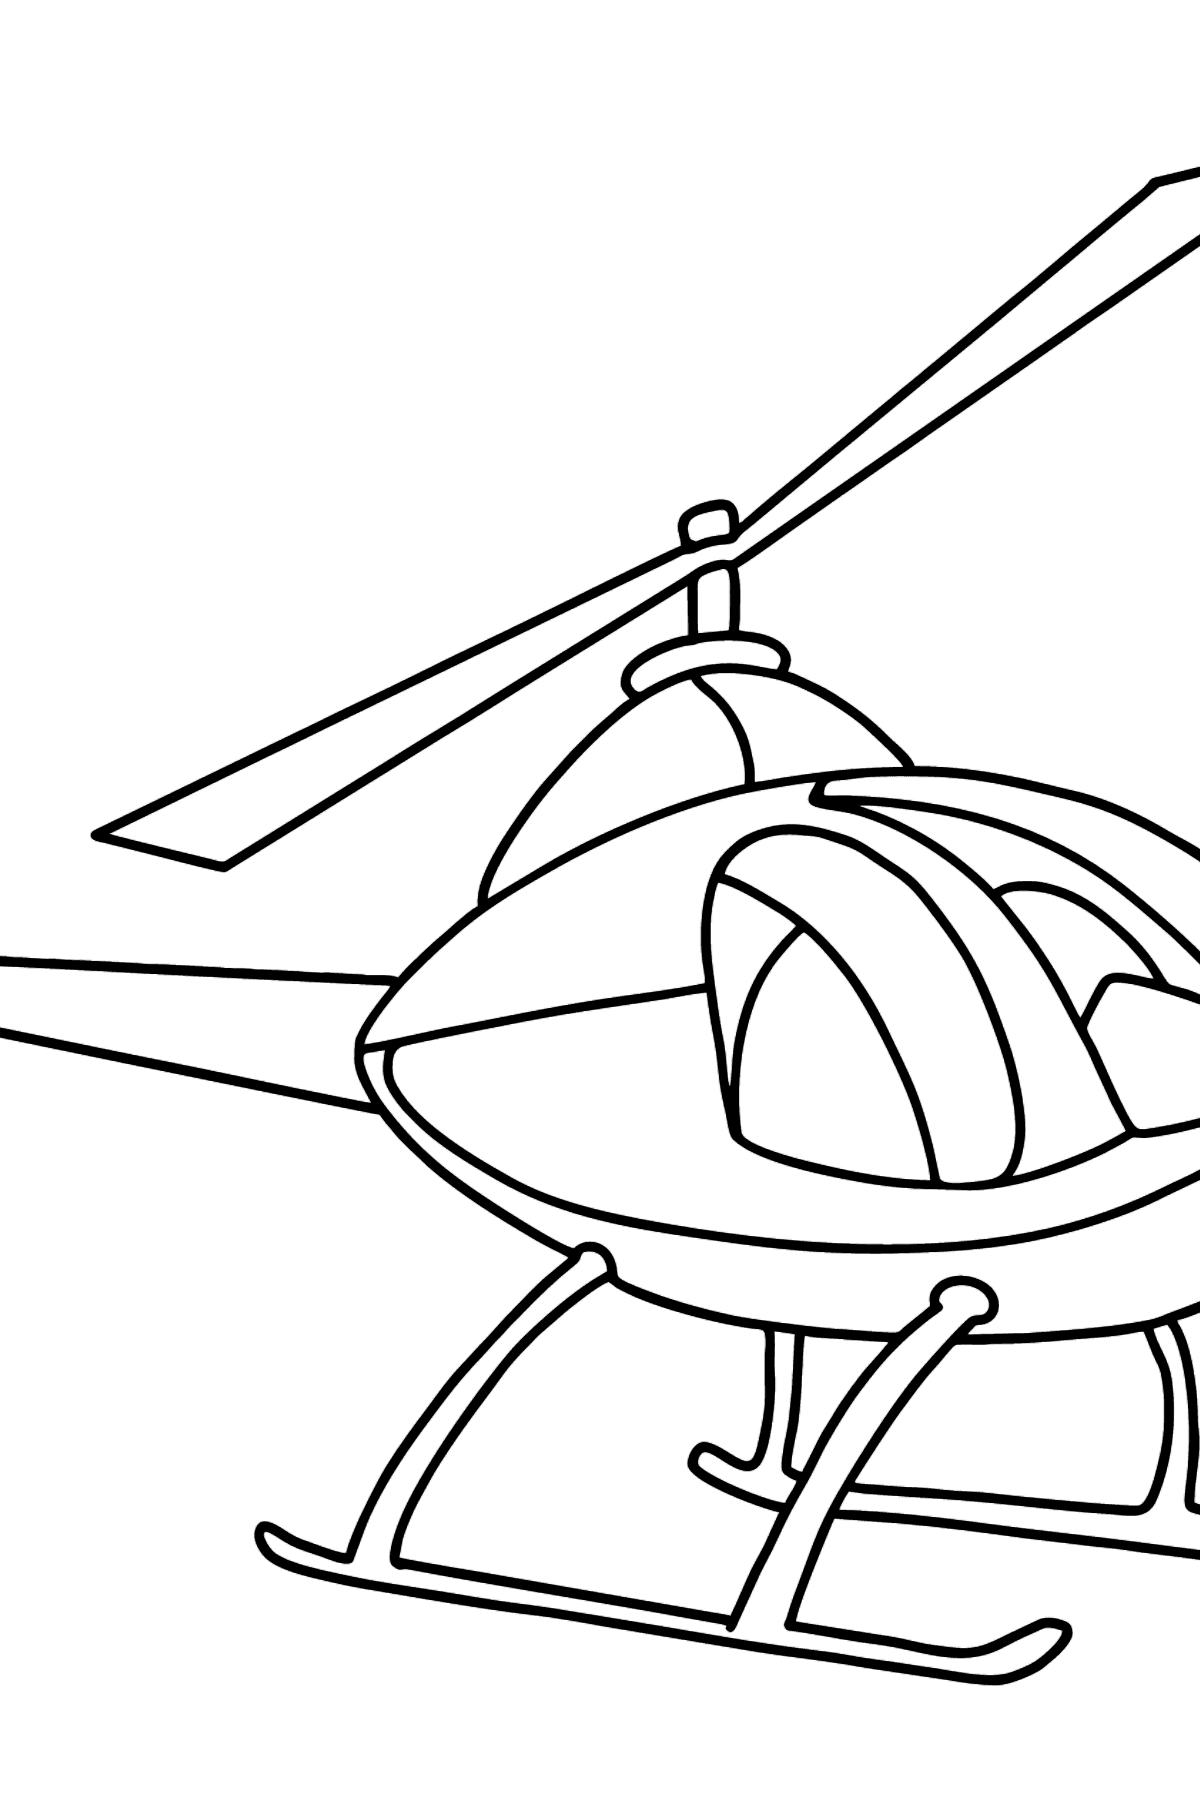 Desen de colorat elicopter pentru copii - Desene de colorat pentru copii